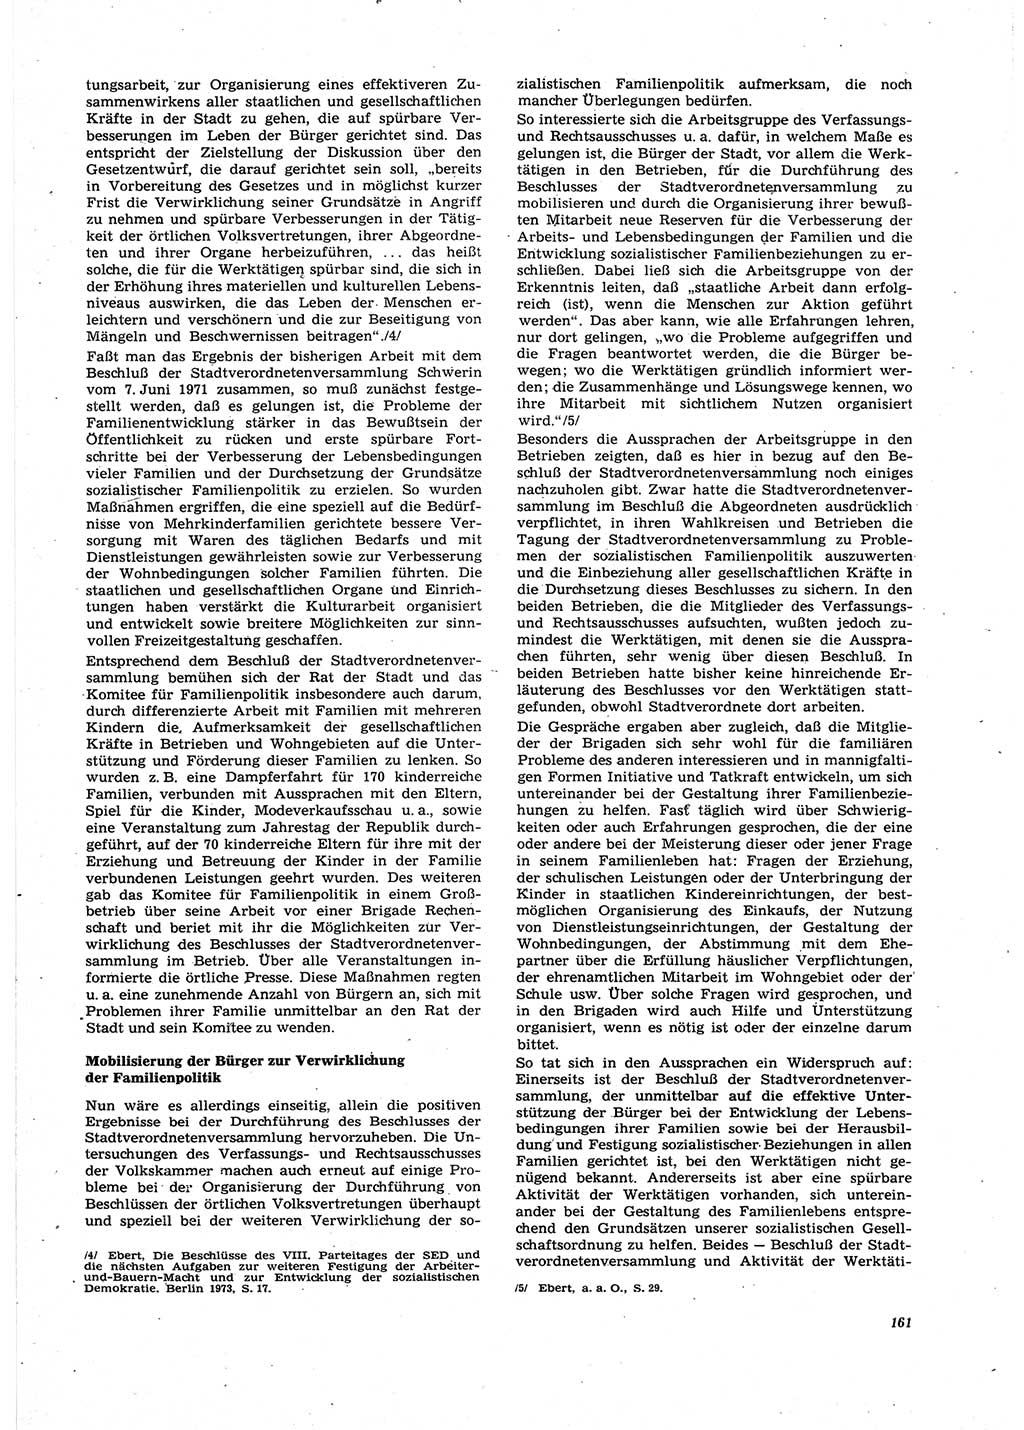 Neue Justiz (NJ), Zeitschrift für Recht und Rechtswissenschaft [Deutsche Demokratische Republik (DDR)], 27. Jahrgang 1973, Seite 161 (NJ DDR 1973, S. 161)